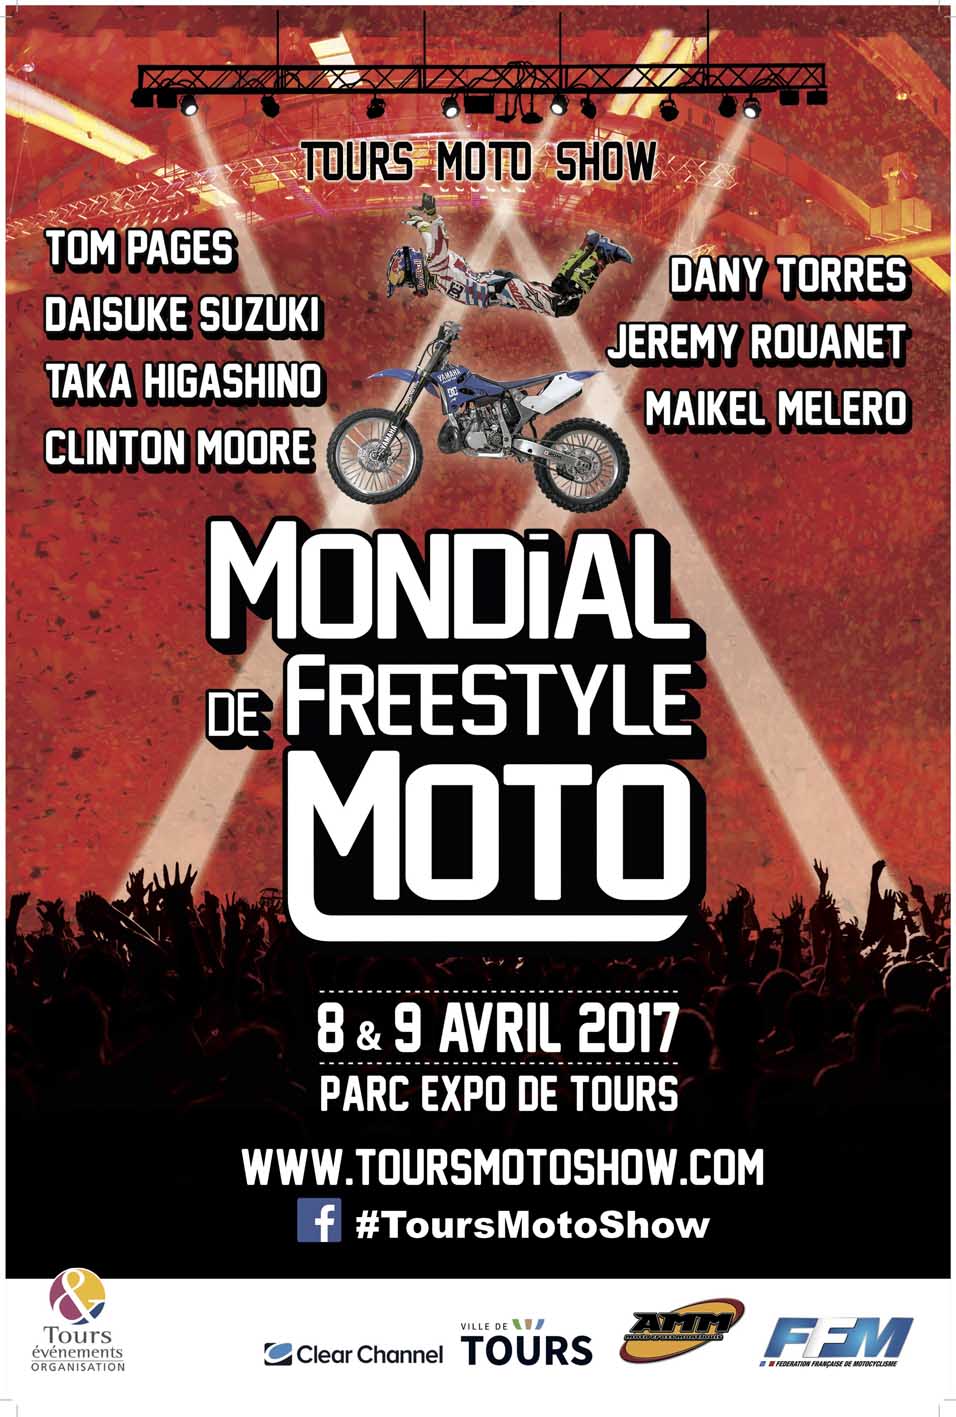 Tours Moto Show : Mondial de freestyle moto avec Tom (...)